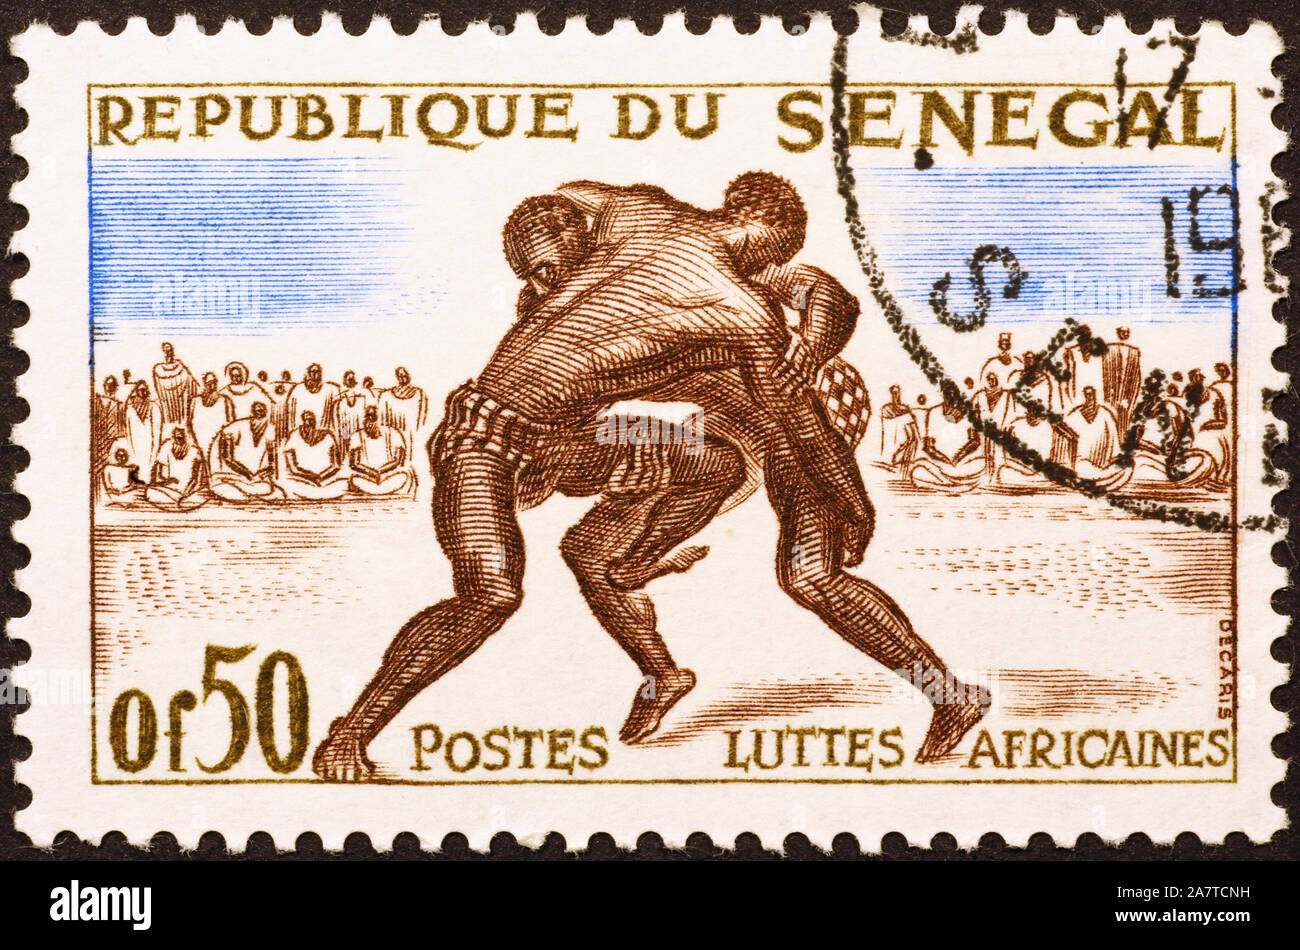 Lutteurs africains sur des timbres anciens du Sénégal Banque D'Images